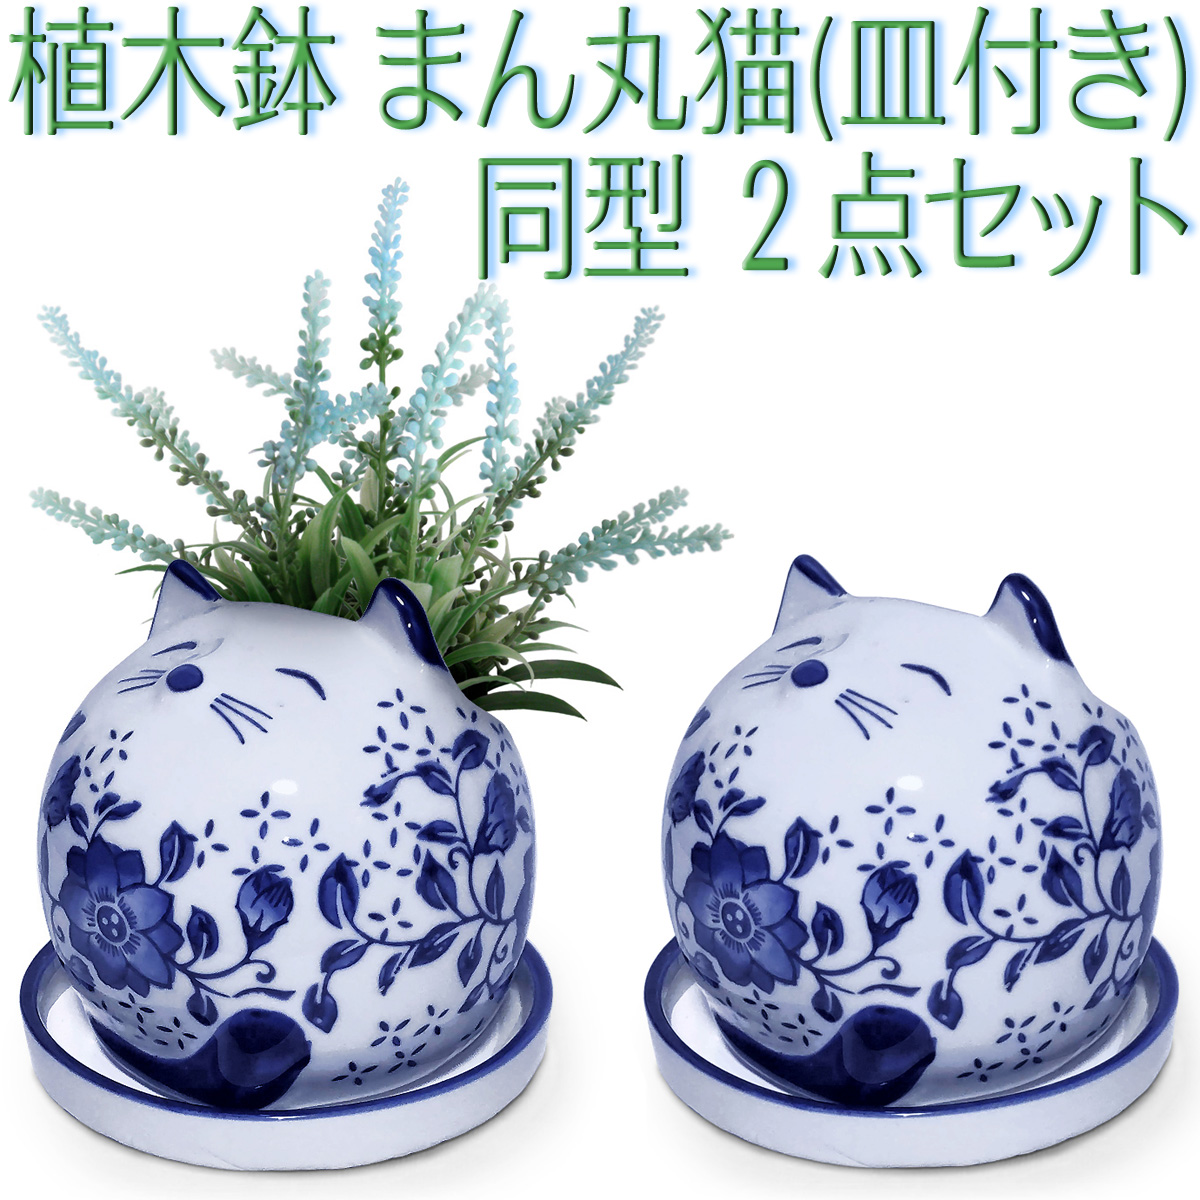 植木鉢 陶器 猫 同型 2点セット ネコ型 まん丸猫 室内 受け皿付き 底穴